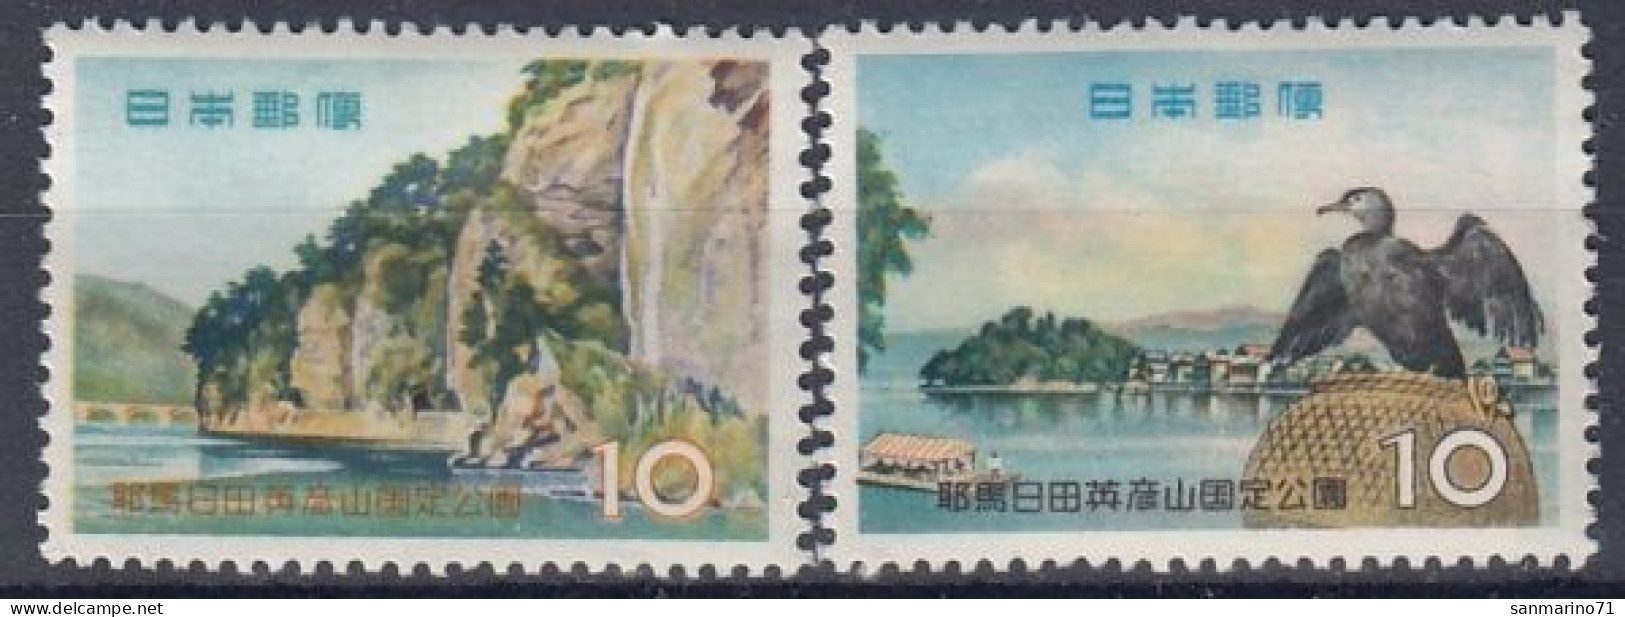 JAPAN 708-709,unused - Islands